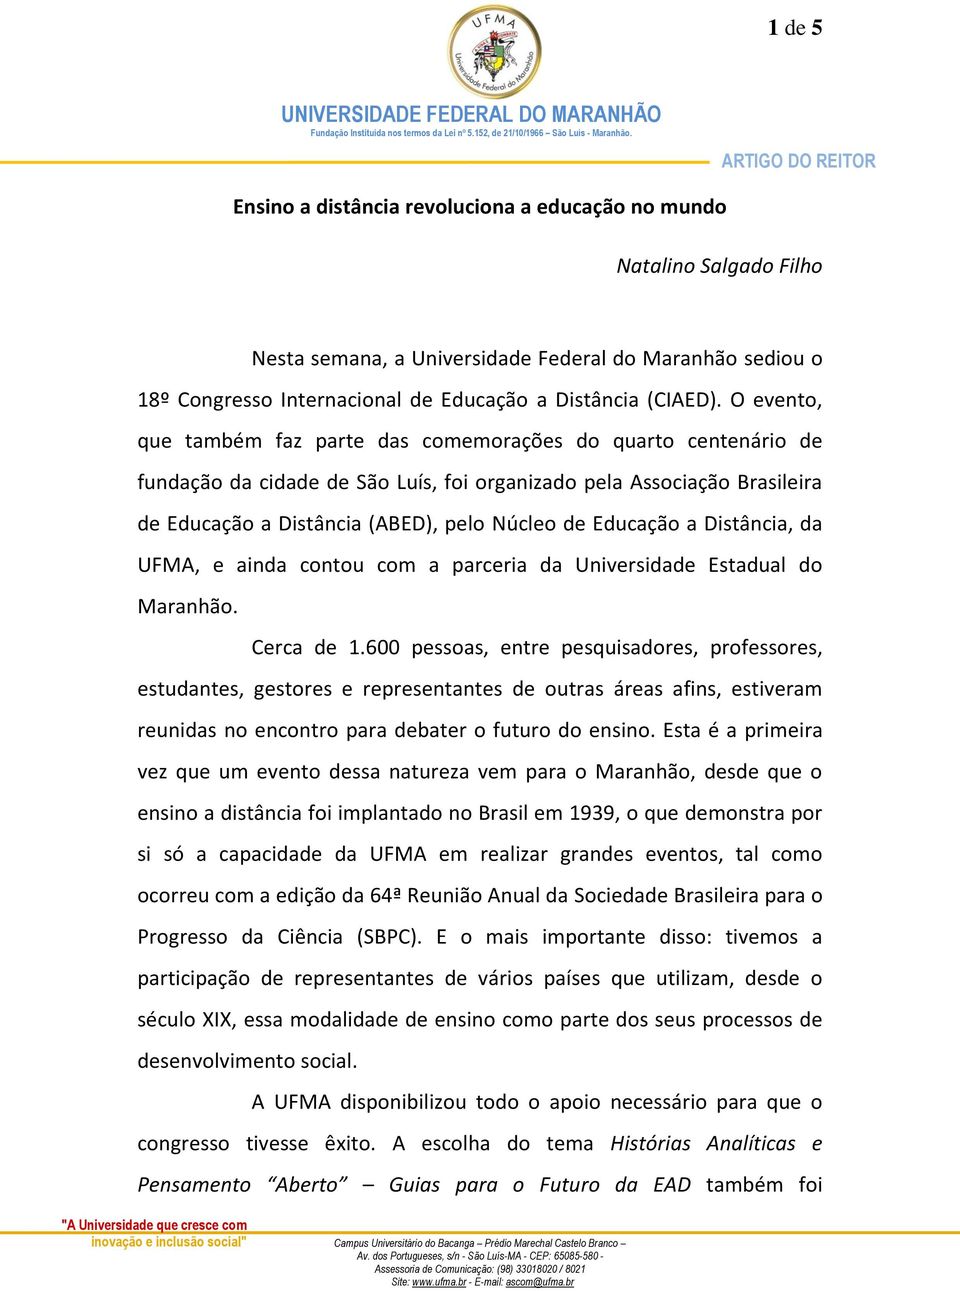 Educação a Distância, da UFMA, e ainda contou com a parceria da Universidade Estadual do Maranhão. Cerca de 1.